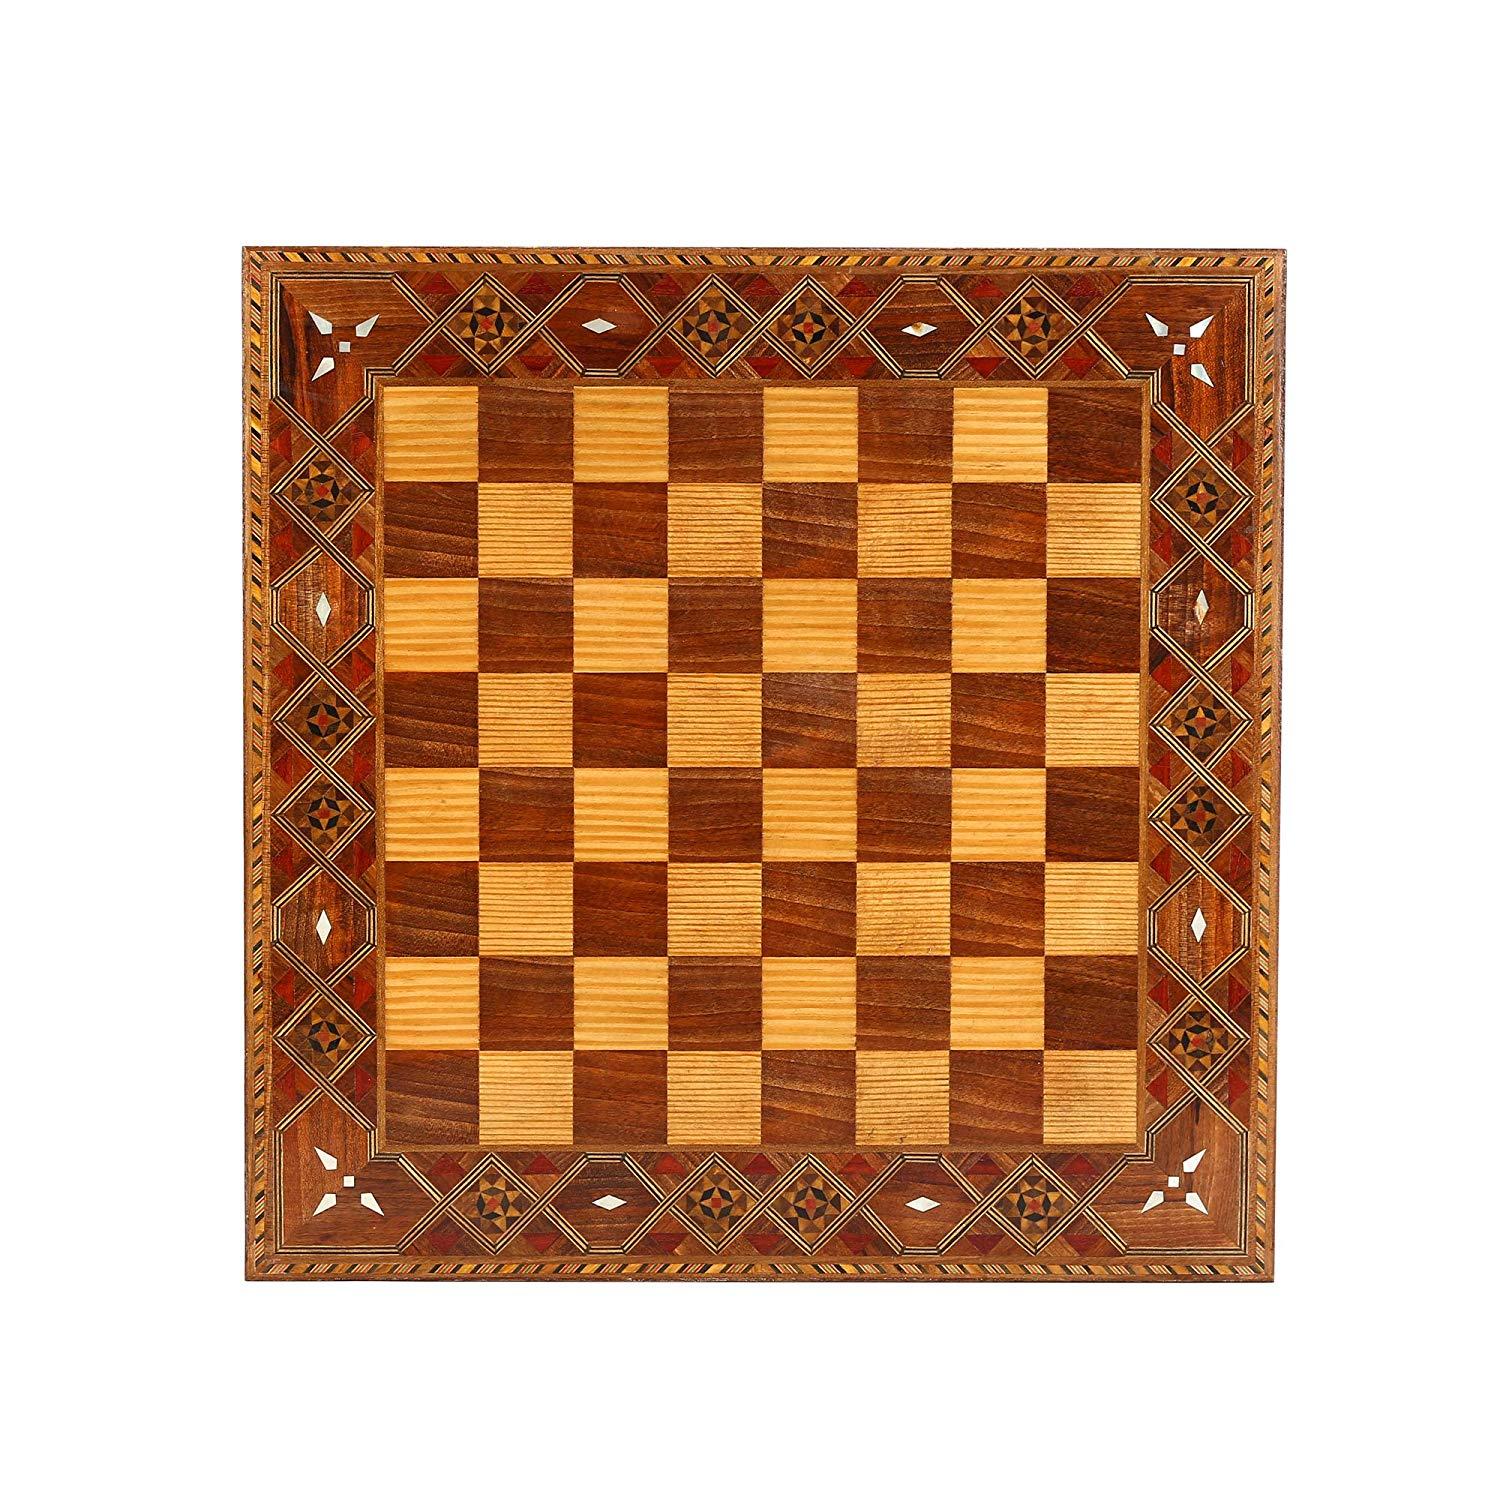 Изображение товара: Набор классических шахматных фигур для взрослых, набор шахматных фигур ручной работы из натурального массива дерева с оригинальной жемчужиной, Размер 7 см